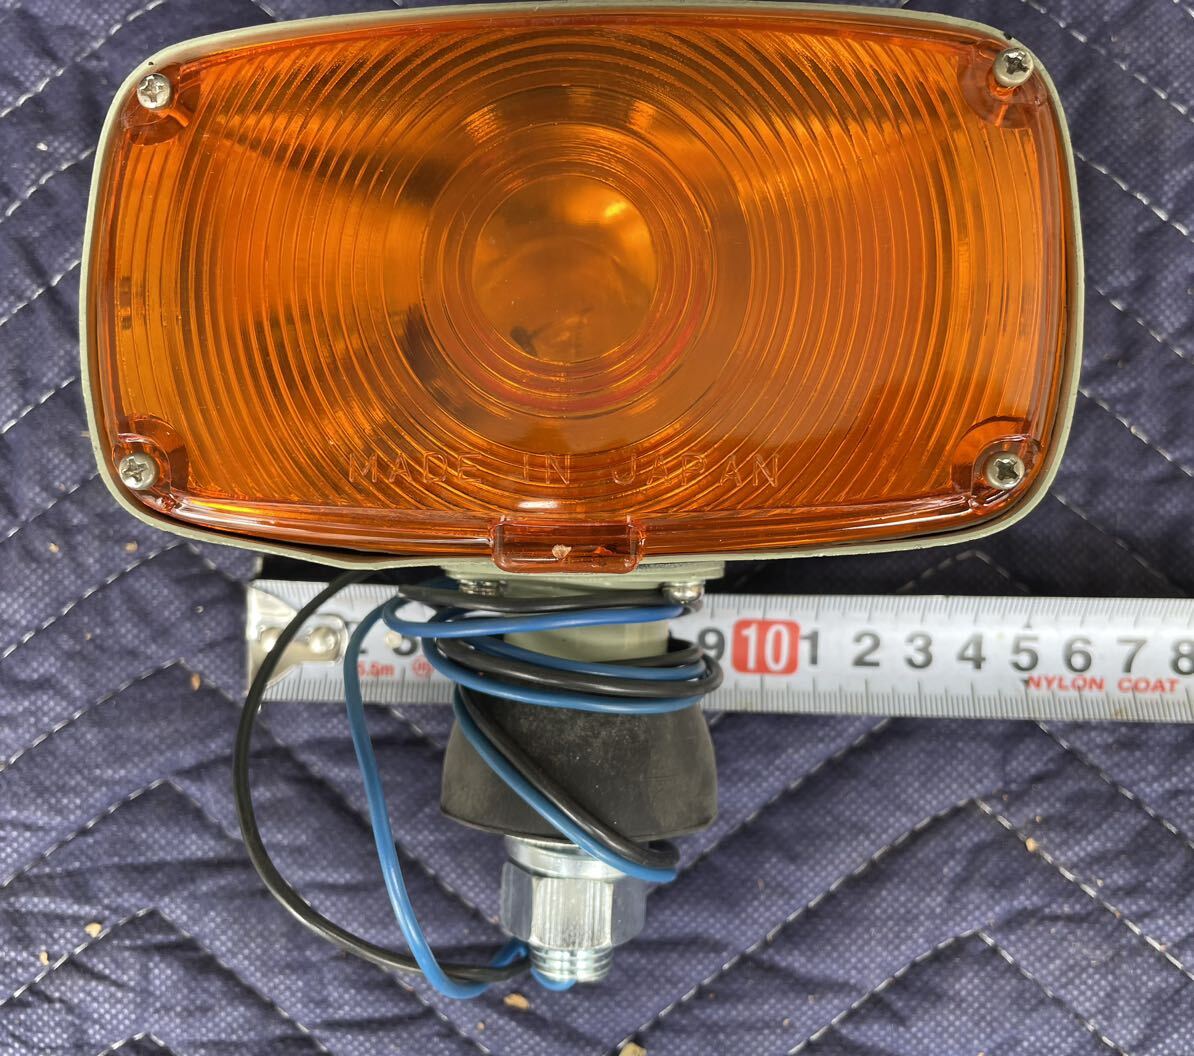  редкий прямоугольник двусторонний указатель поворота 2 шт. комплект маркер (габарит) лампа Showa Retro автобус Isuzu капот автобус westel маркер (габарит) свет tail подлинная вещь saec 